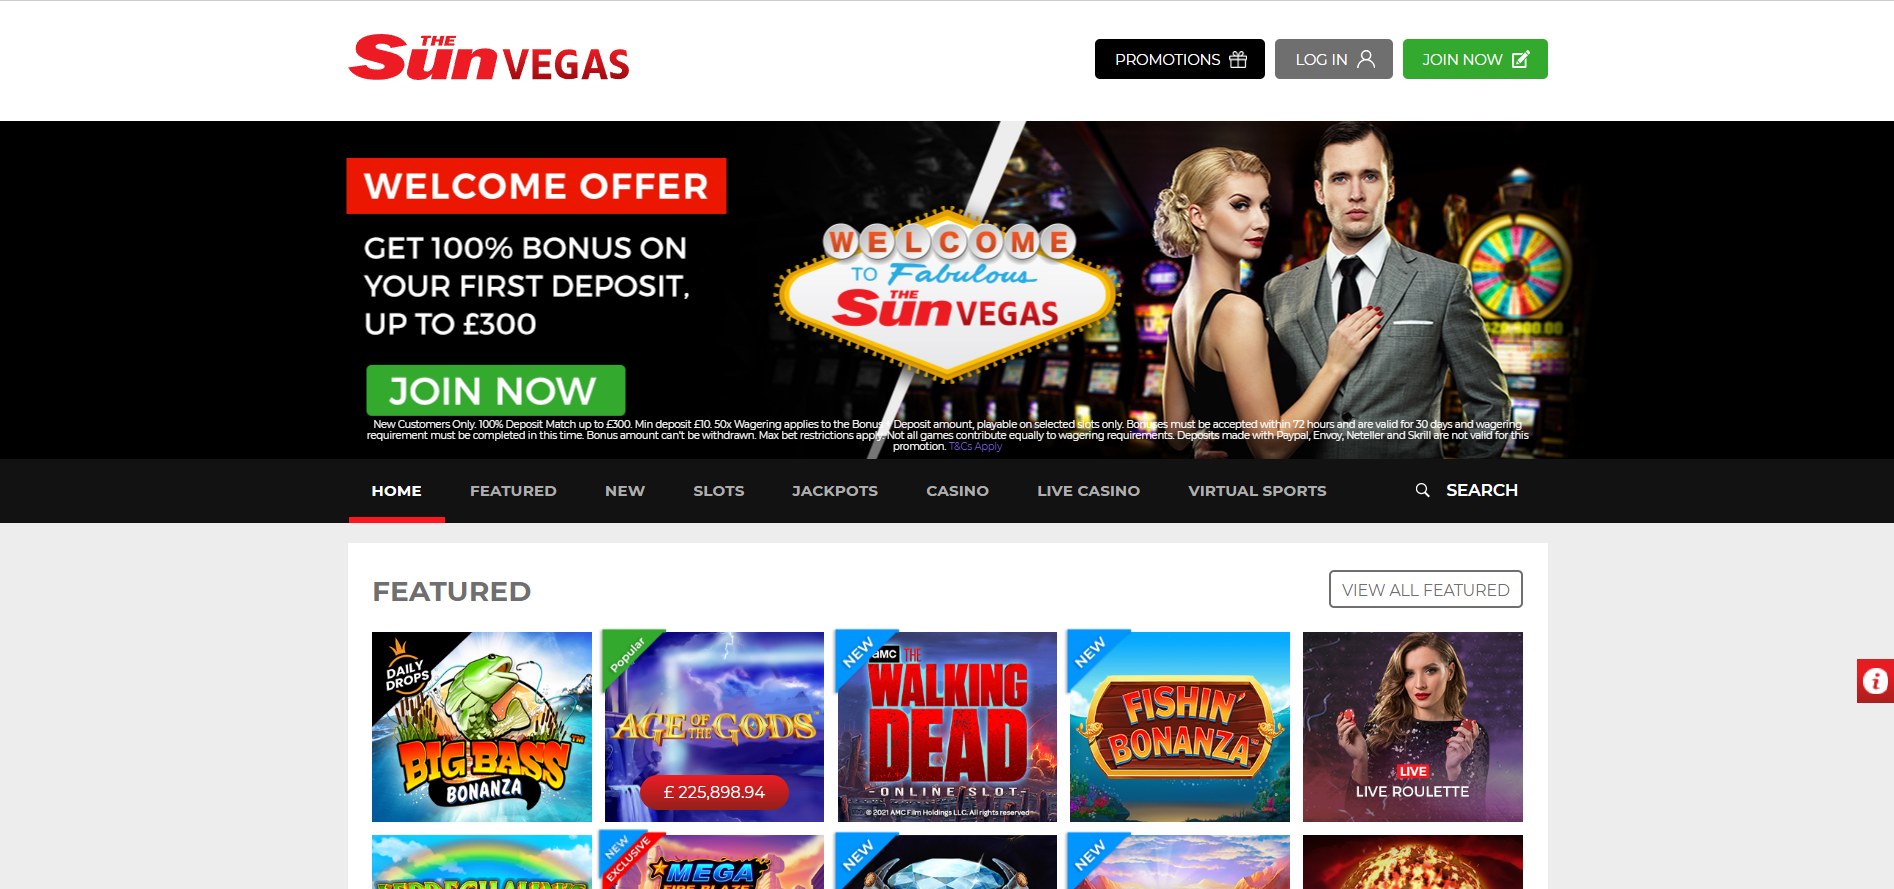 The Sun Vegas Casino Lobby